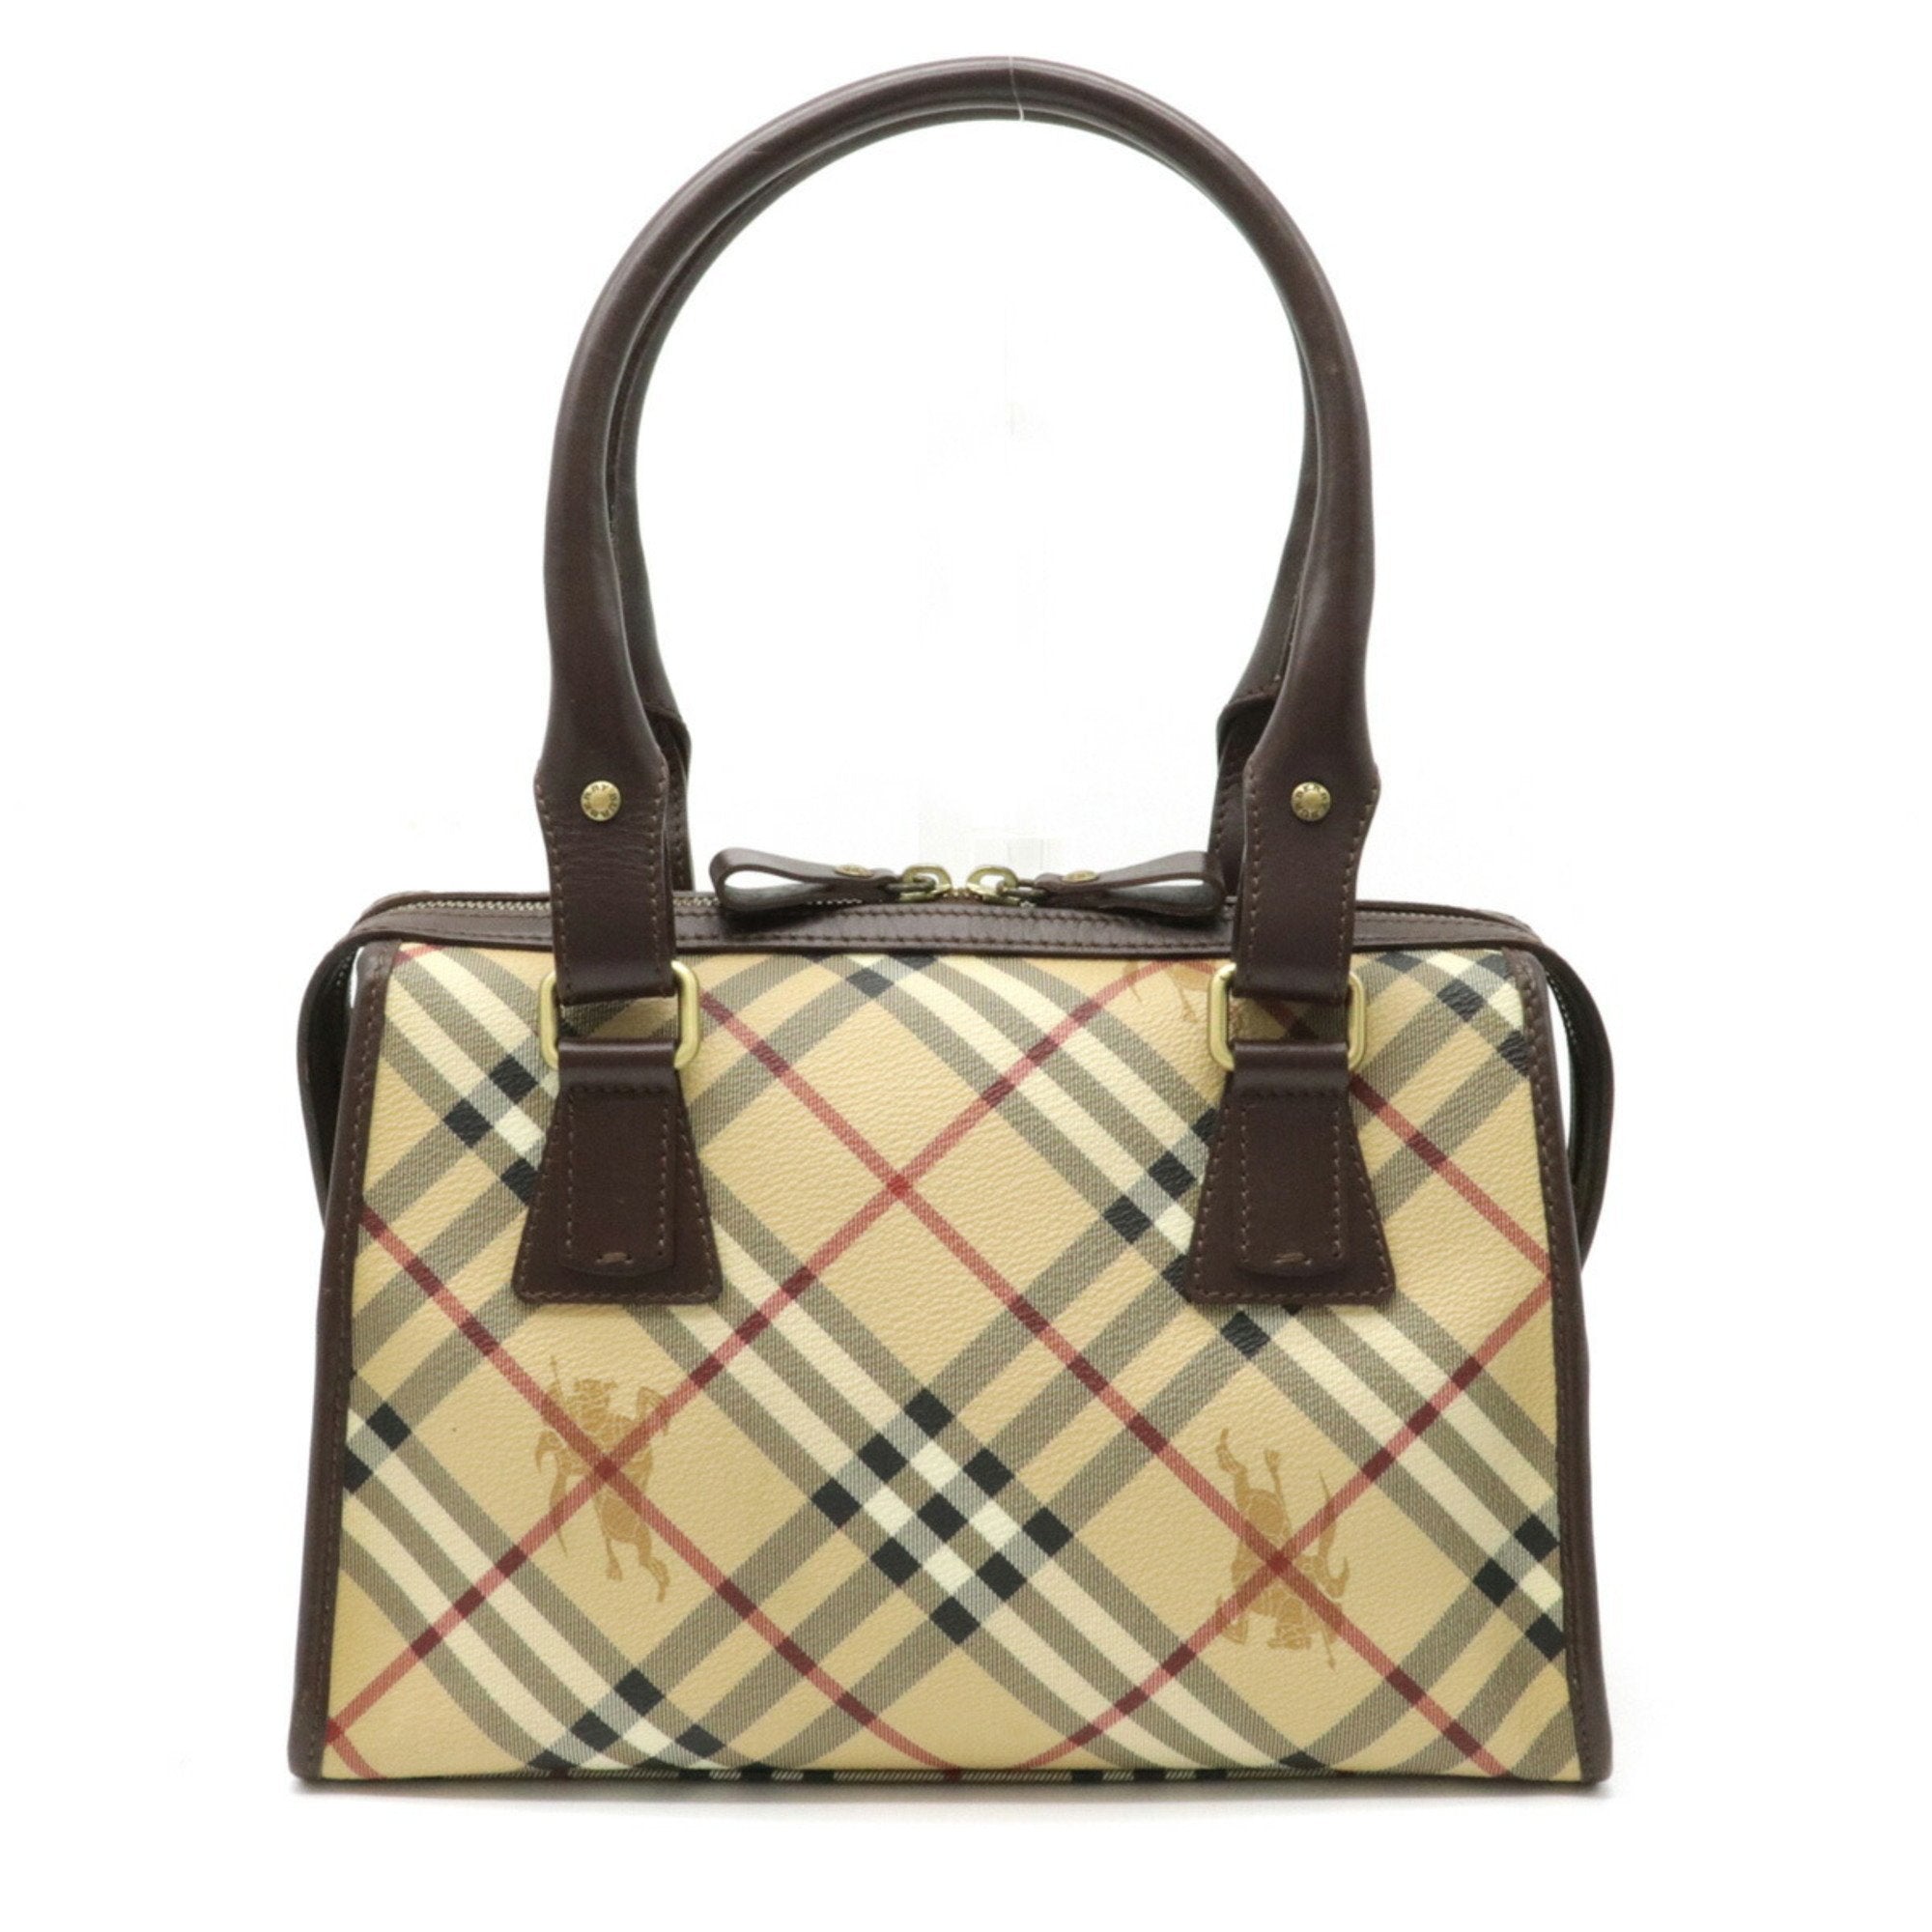 Burberry Nova check plaid handbag shoulder bag PVC leather beige dark